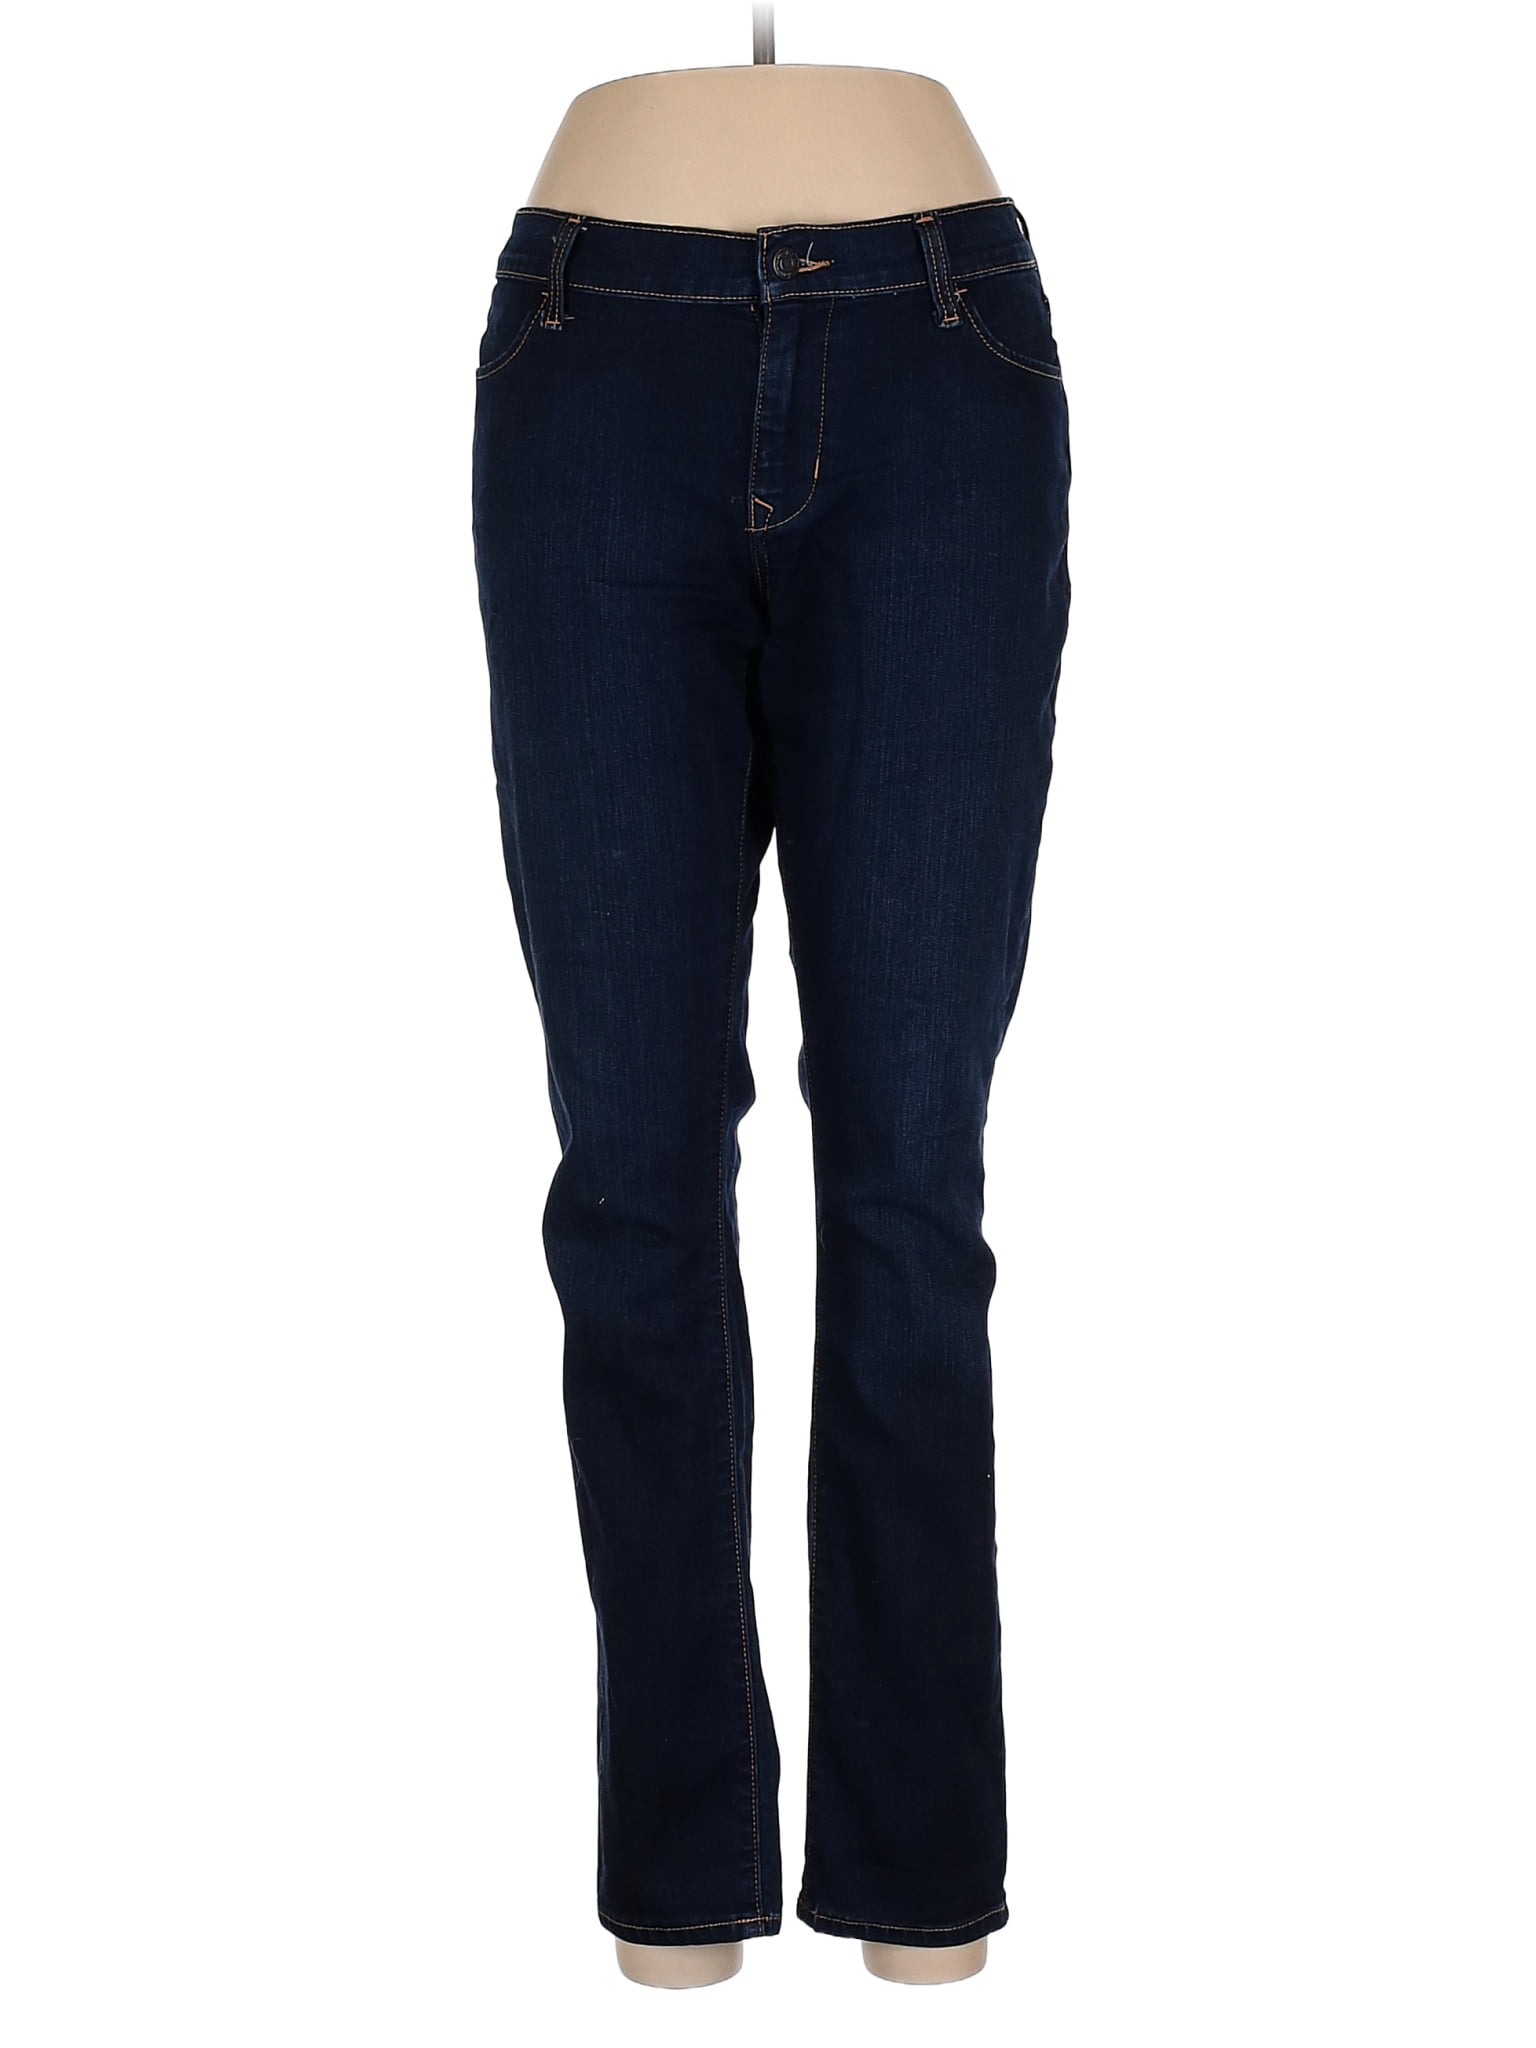 Old Navy Blue Jeans Size 10 - 64% off | thredUP